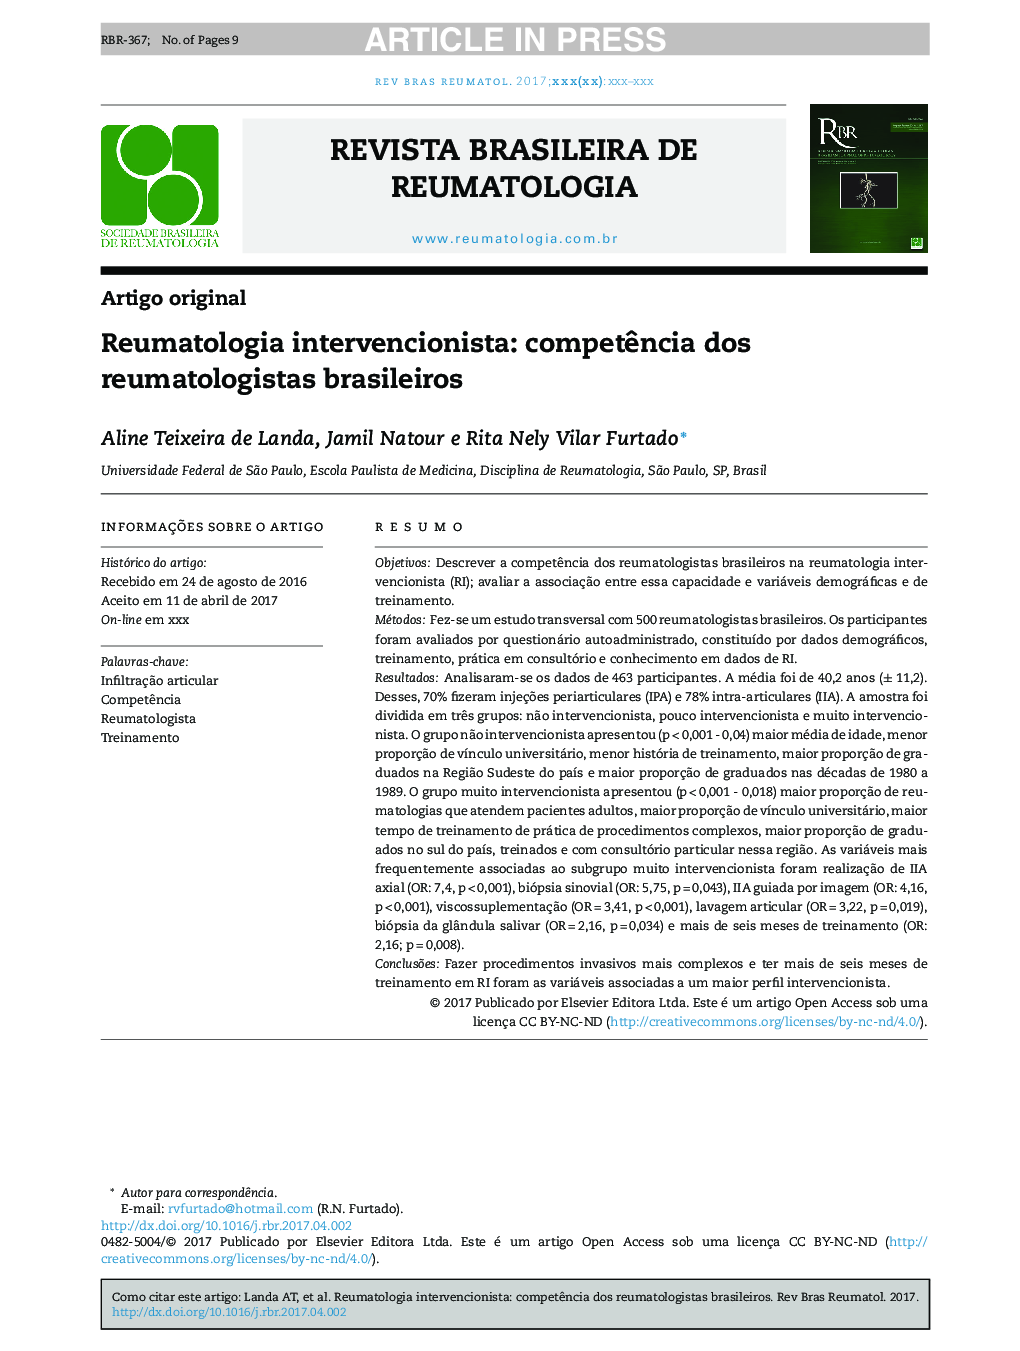 Reumatologia intervencionista: competÃªncia dos reumatologistas brasileiros